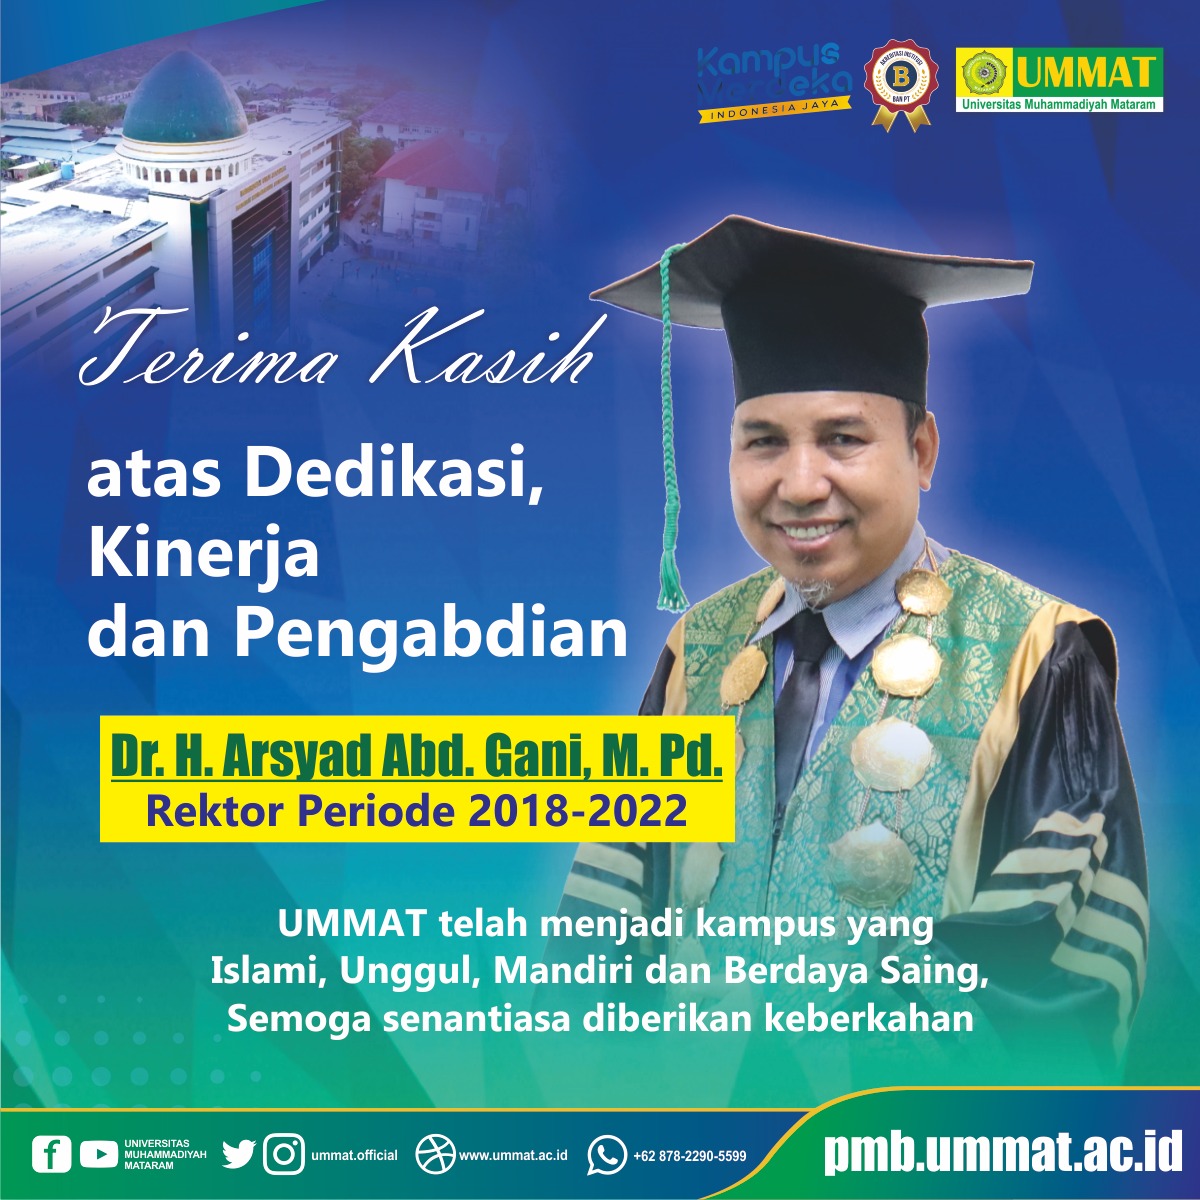 Terimakasih atas Dedikasi, Kinerja dan Pengabdian Dr. H. Arsyad Abd. Gani, M.Pd Rektor UMMAT Periode 2018-2022